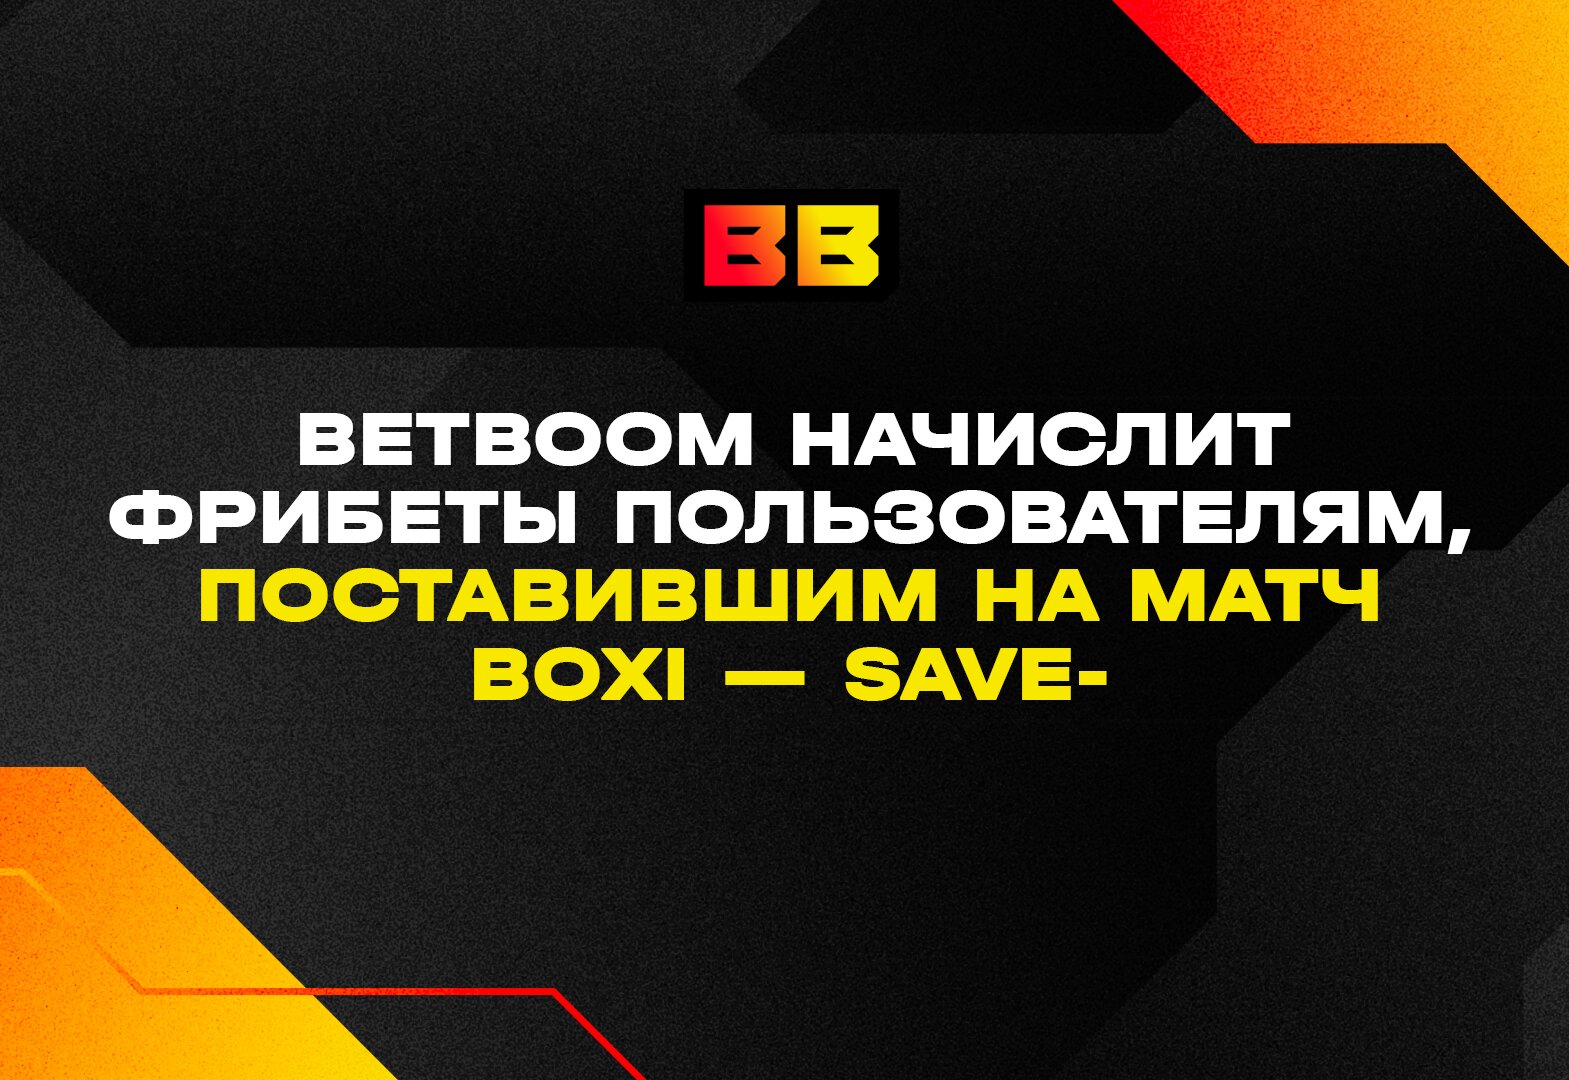 BetBoom начислит фрибеты пользователям, поставившим на матч Boxi — Save-